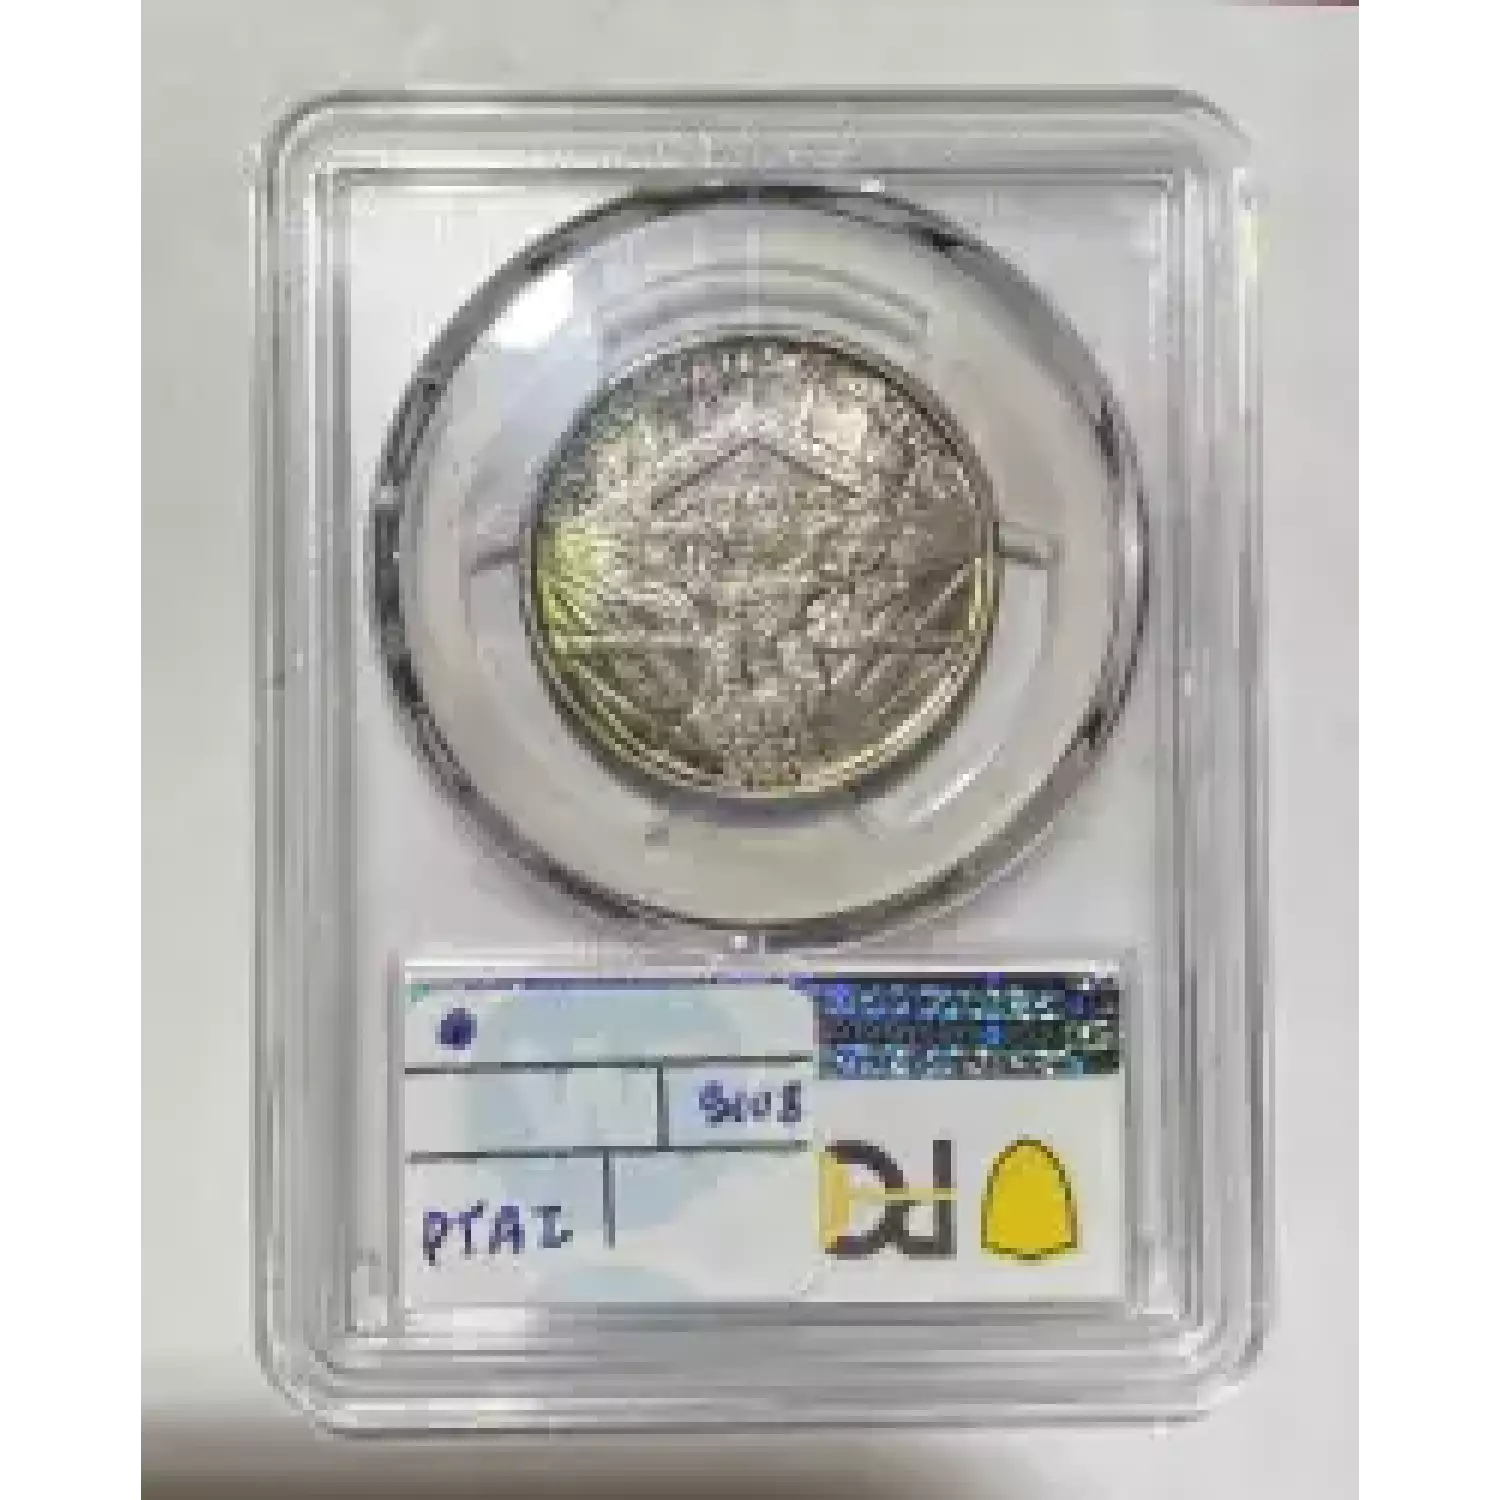 Classic Commemorative Silver--- Arkansas Centennial 1935-1939-Silver- 0.5 Dollar (2)